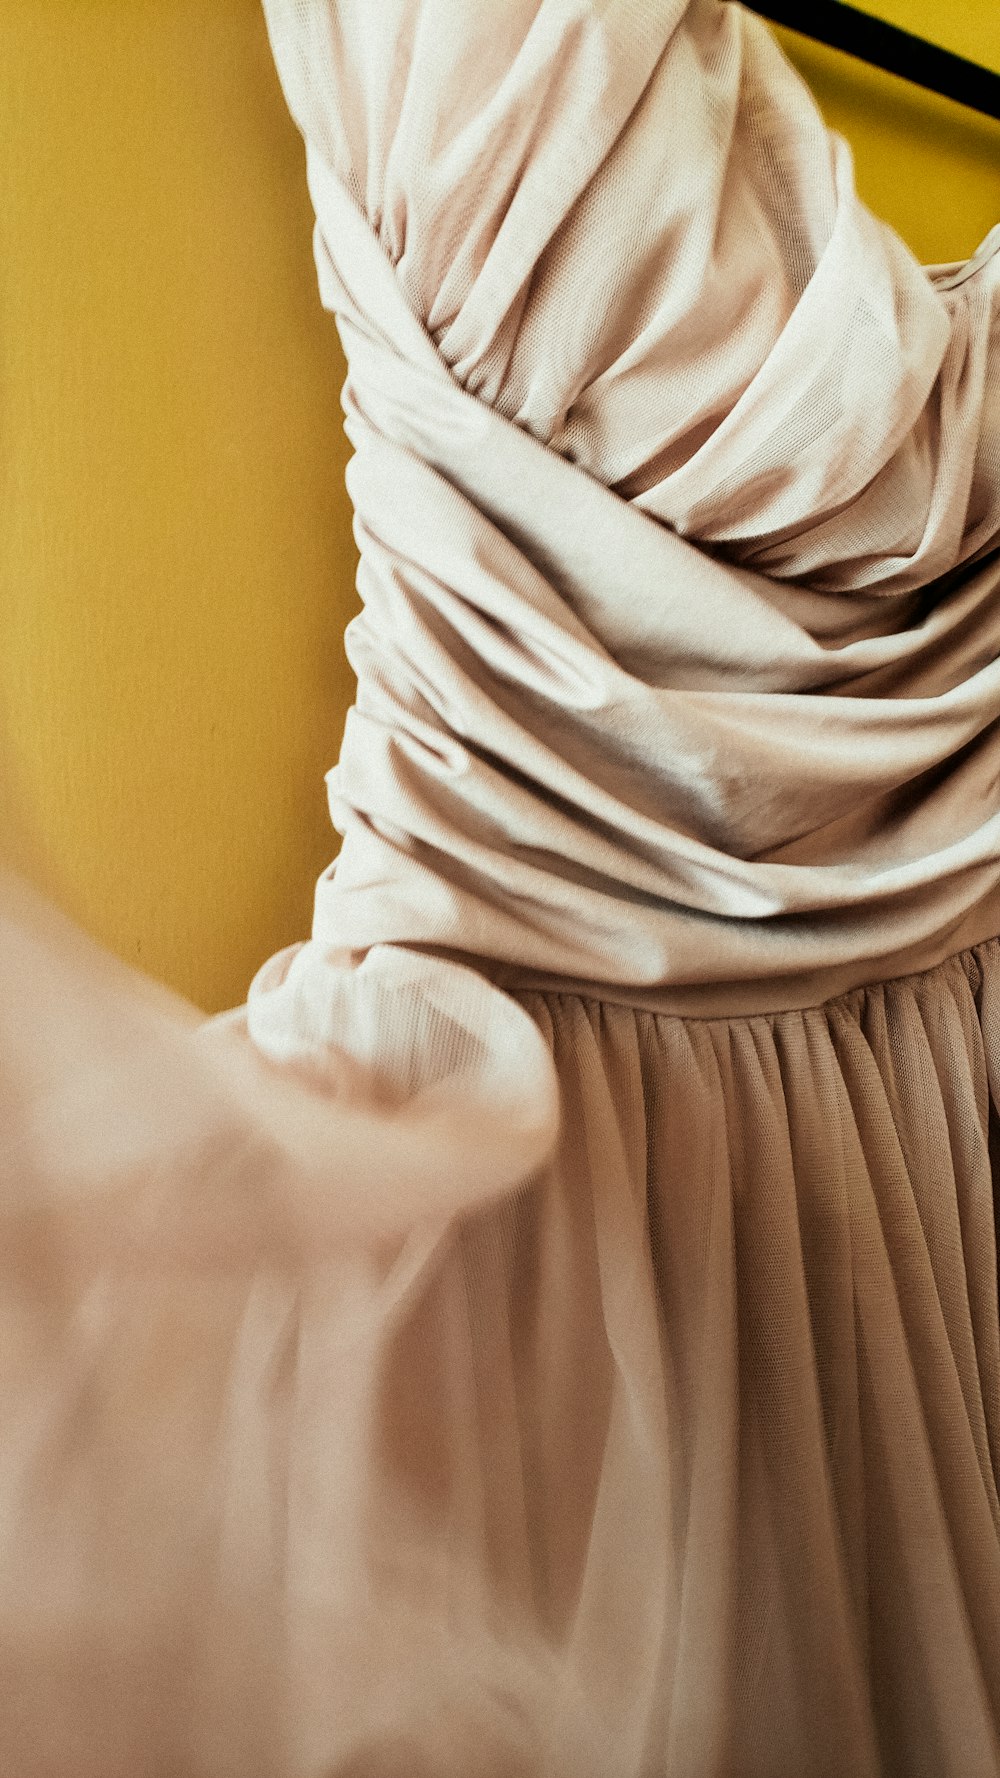 a close up of a dress on a hanger